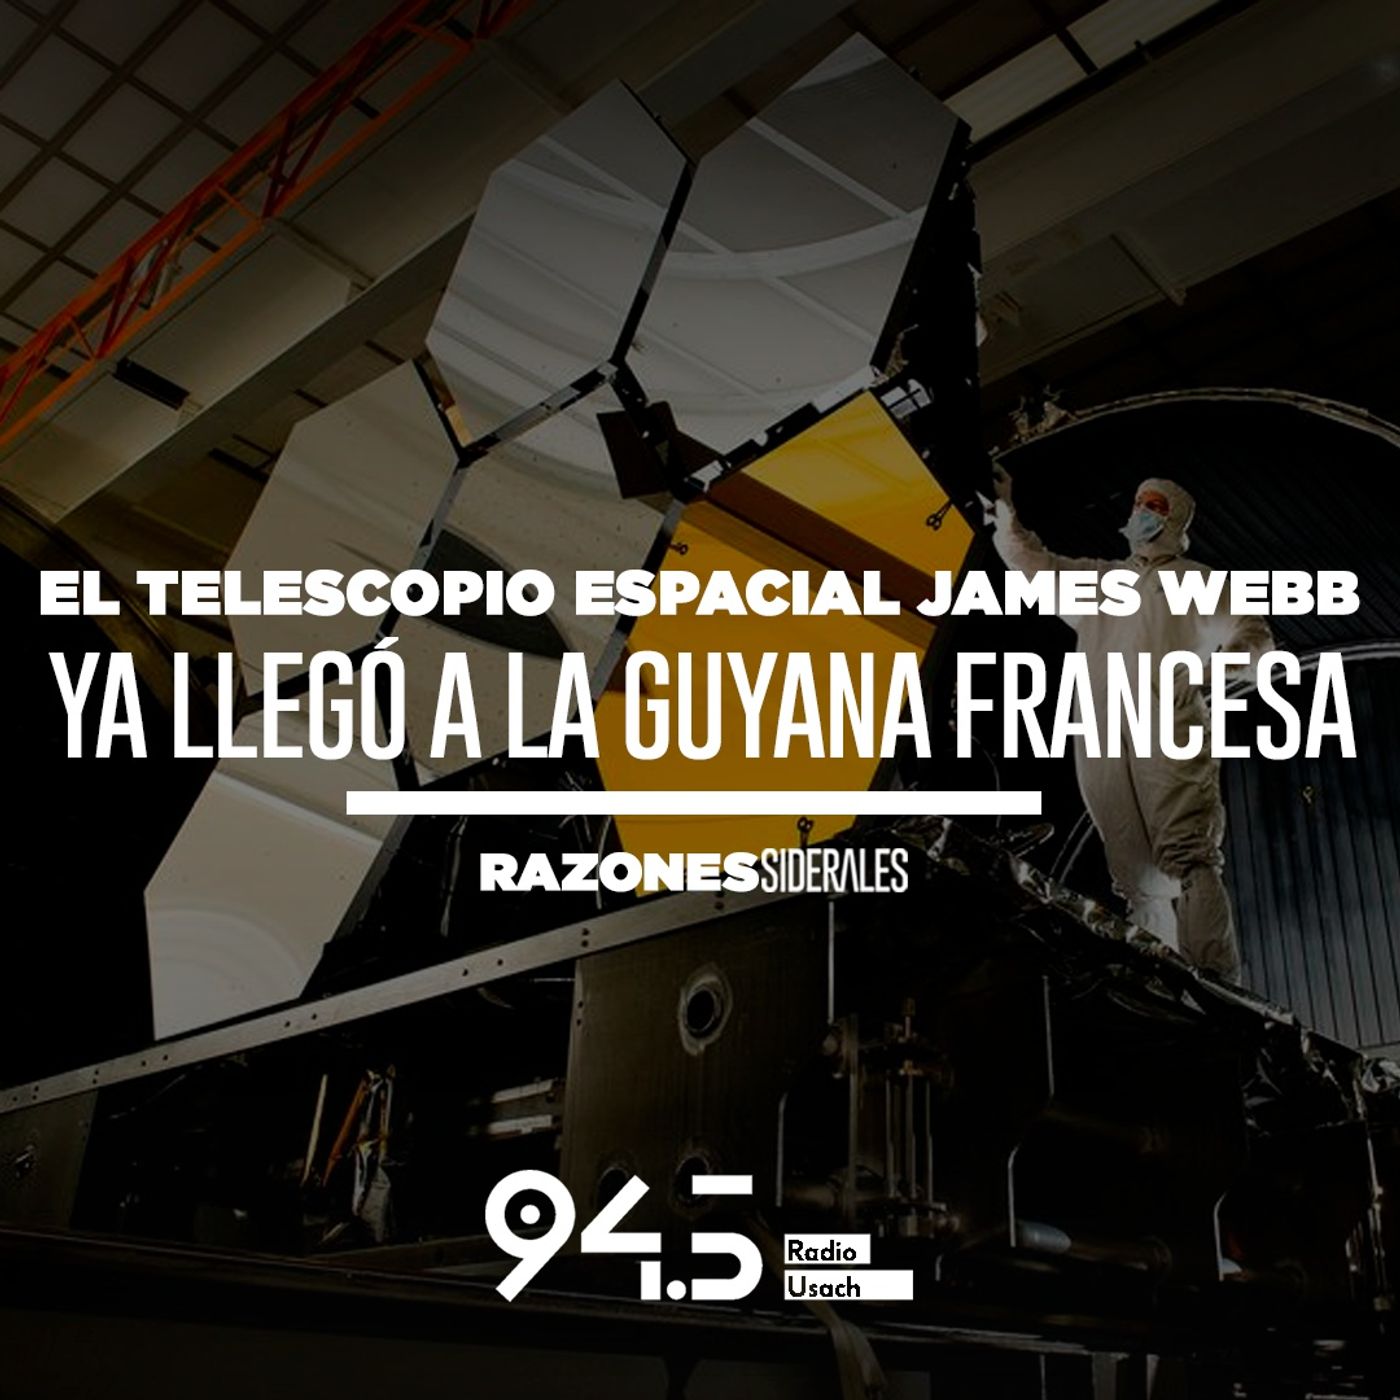 El telescopio espacial James Webb ya llegó a la Guyana Francesa